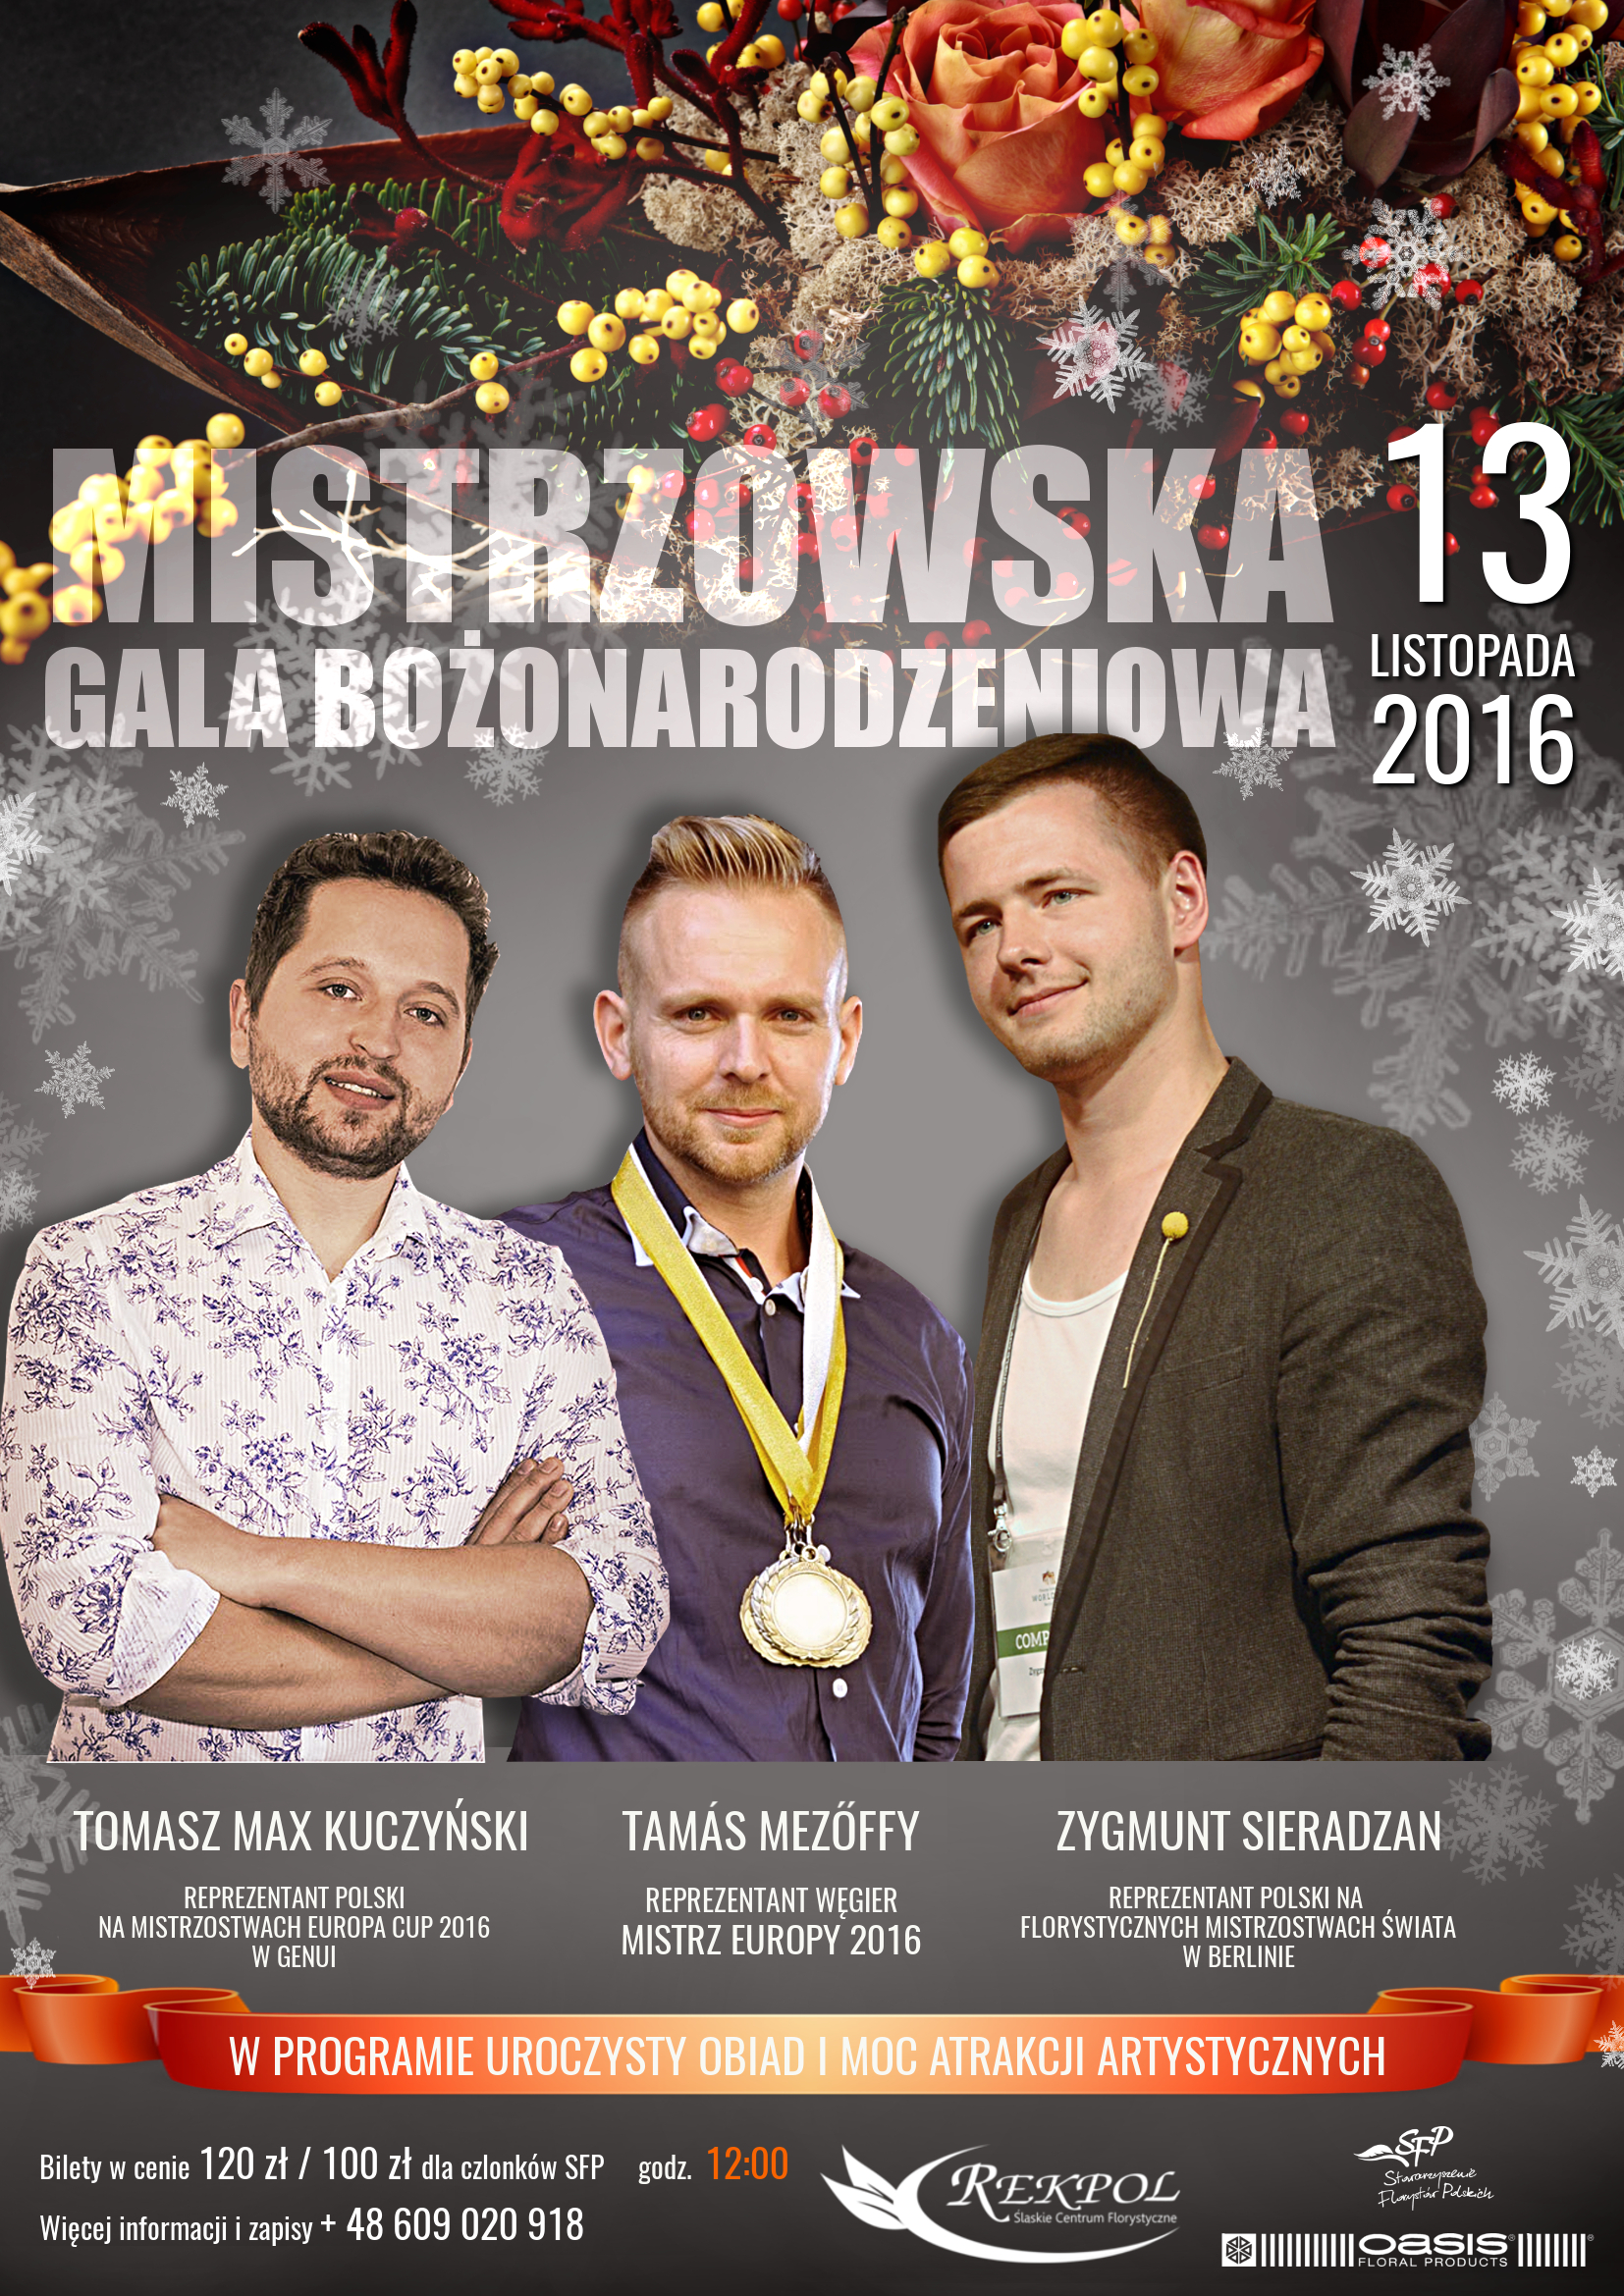 Mistrzowska Gala Bożonarodzeniowa 2016